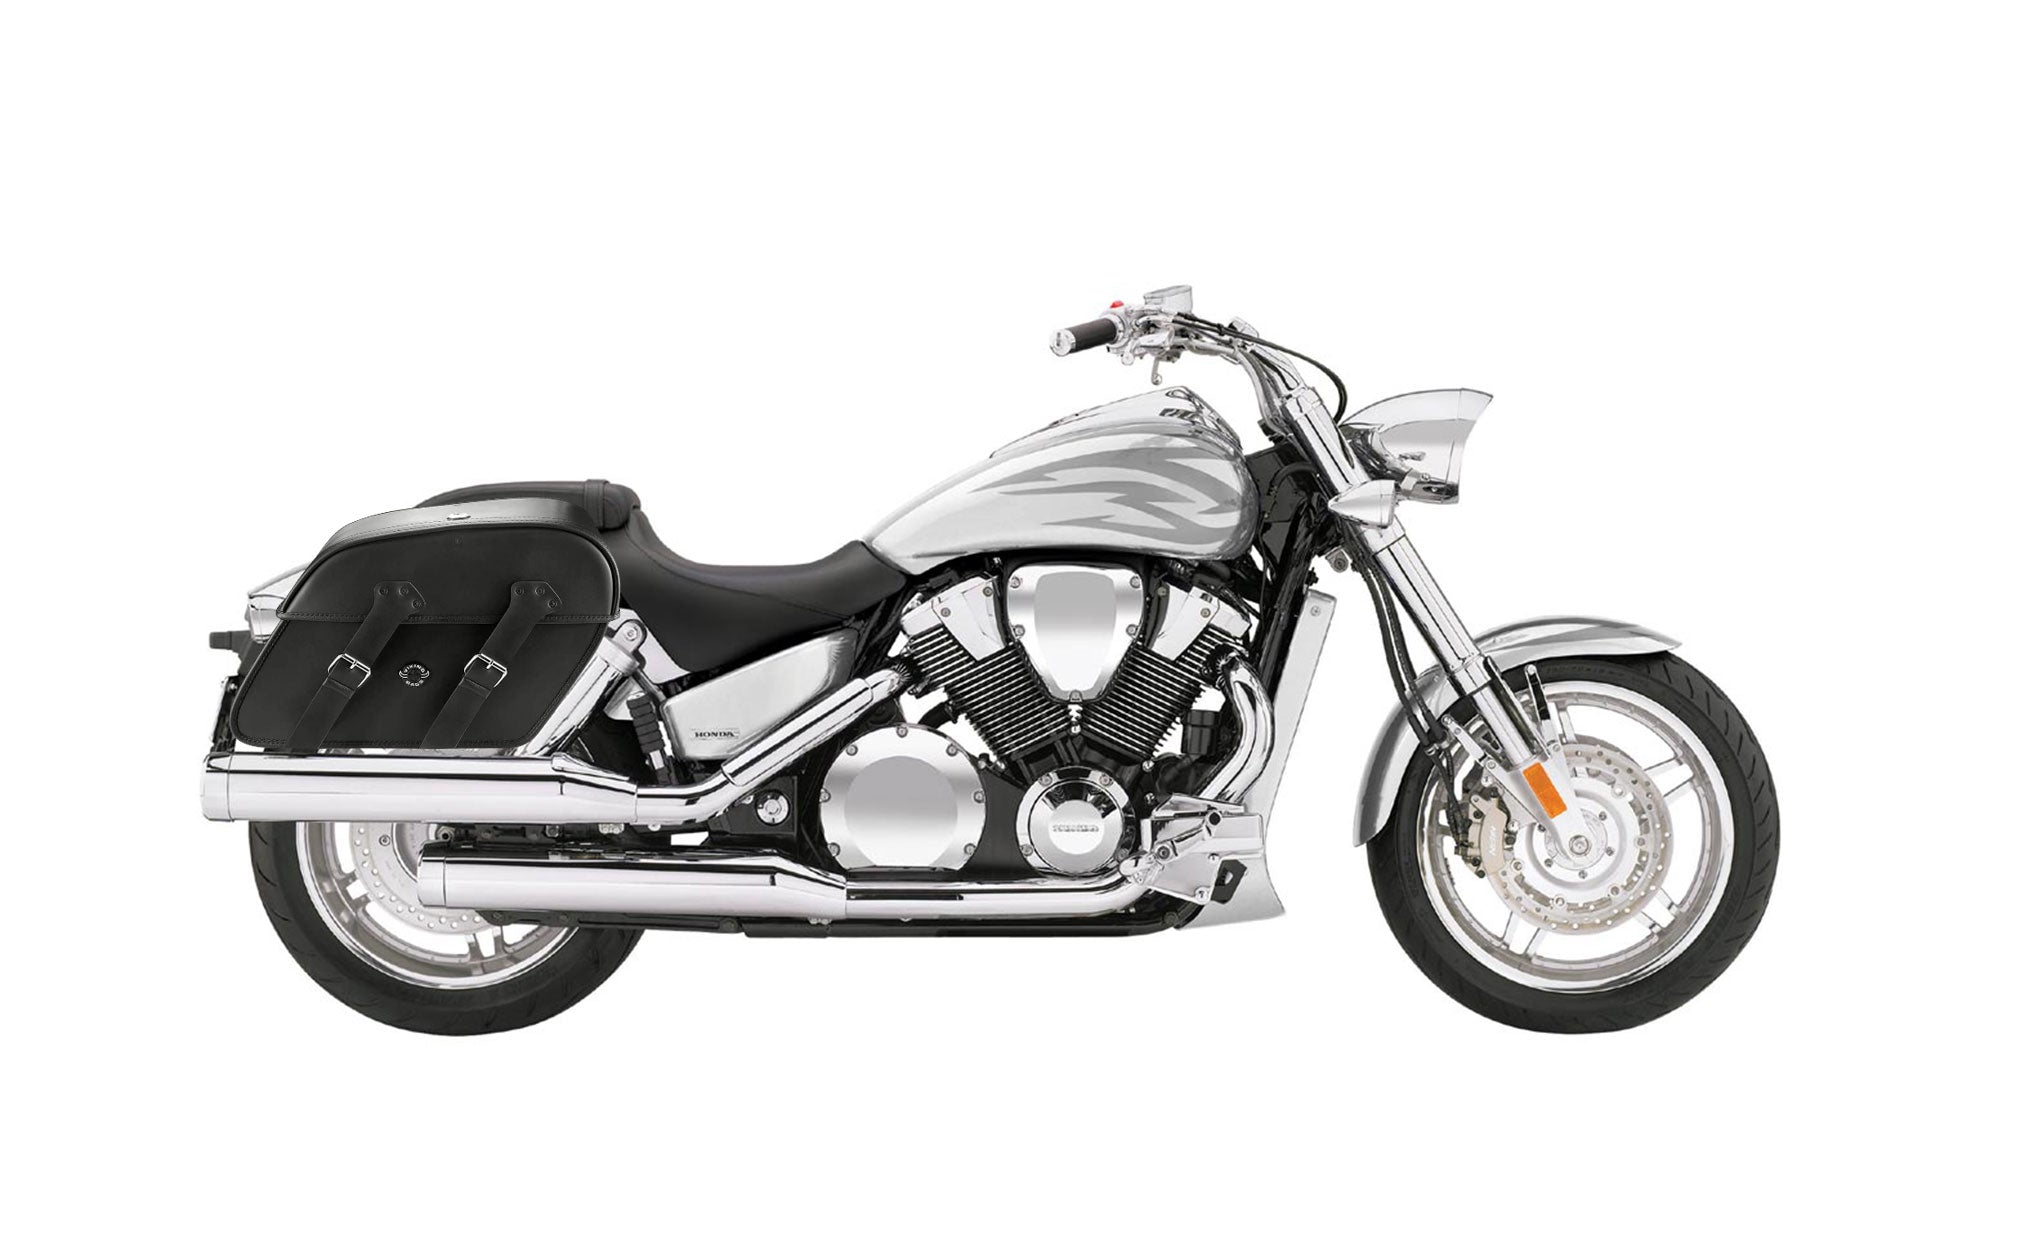 Viking Raven Extra Large Honda Vtx 1800 F Leather Motorcycle Saddlebags on Bike Photo @expand